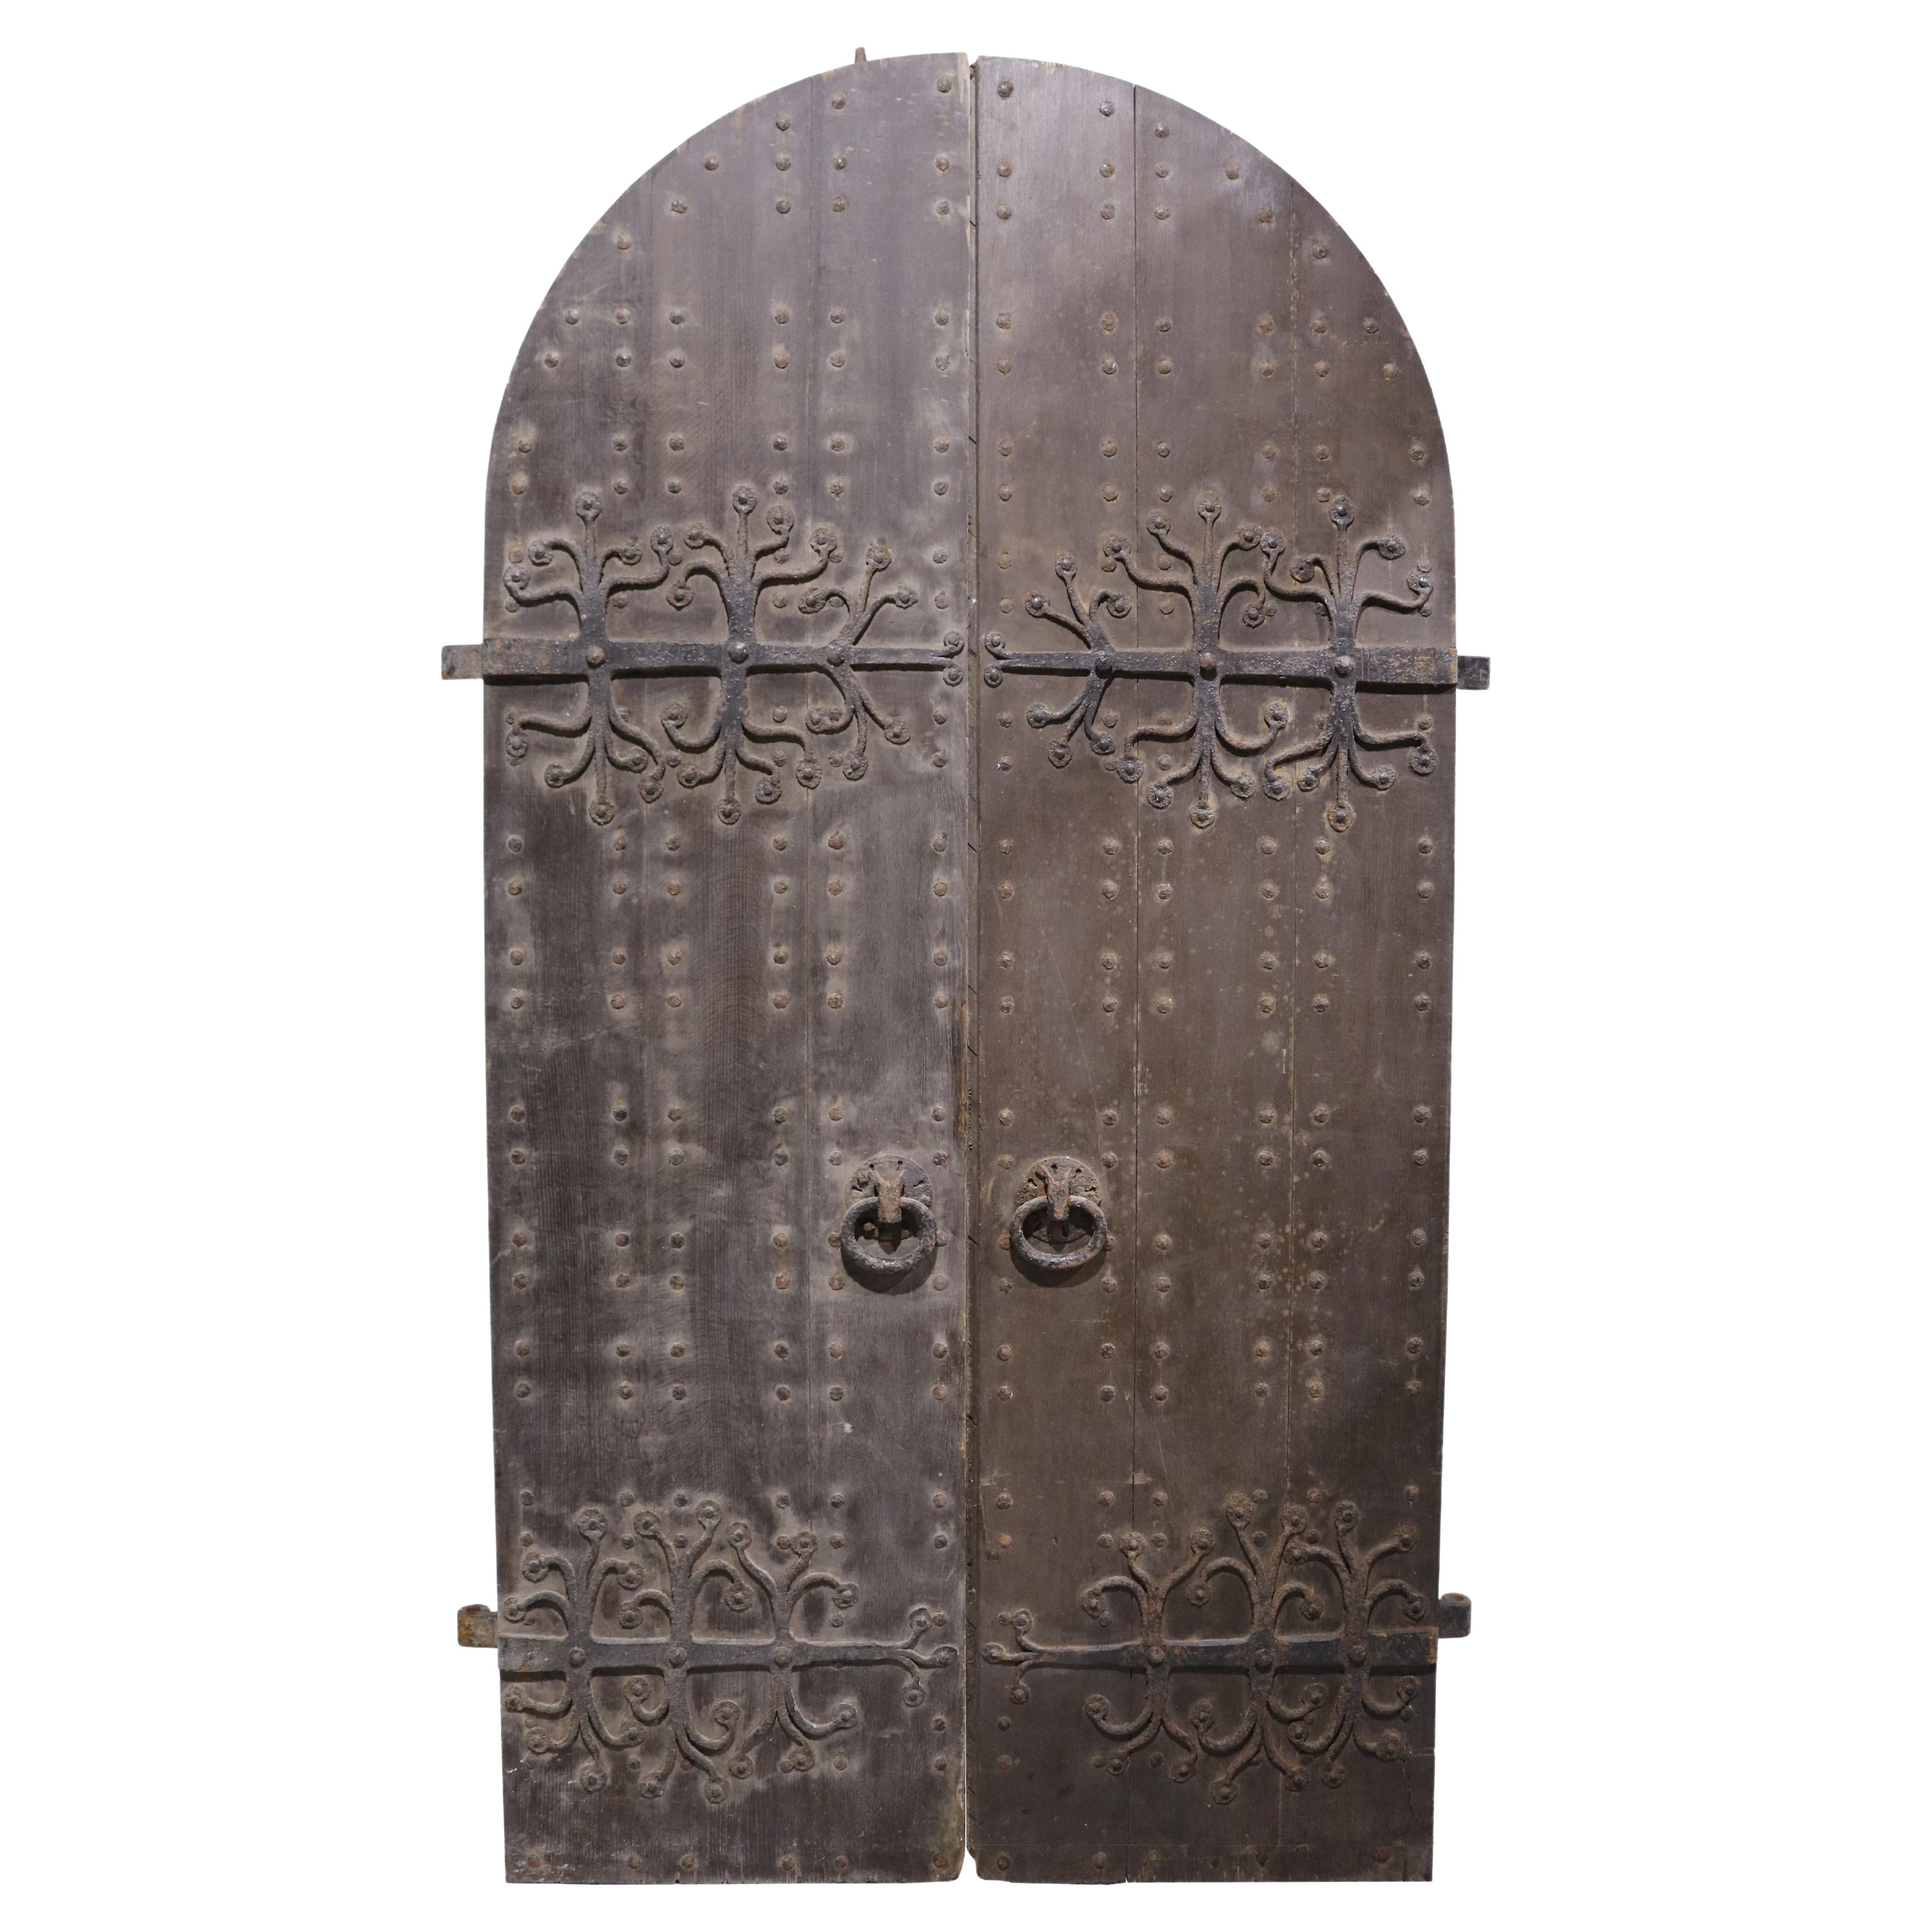 Portes d'église anglaises de style médiéval